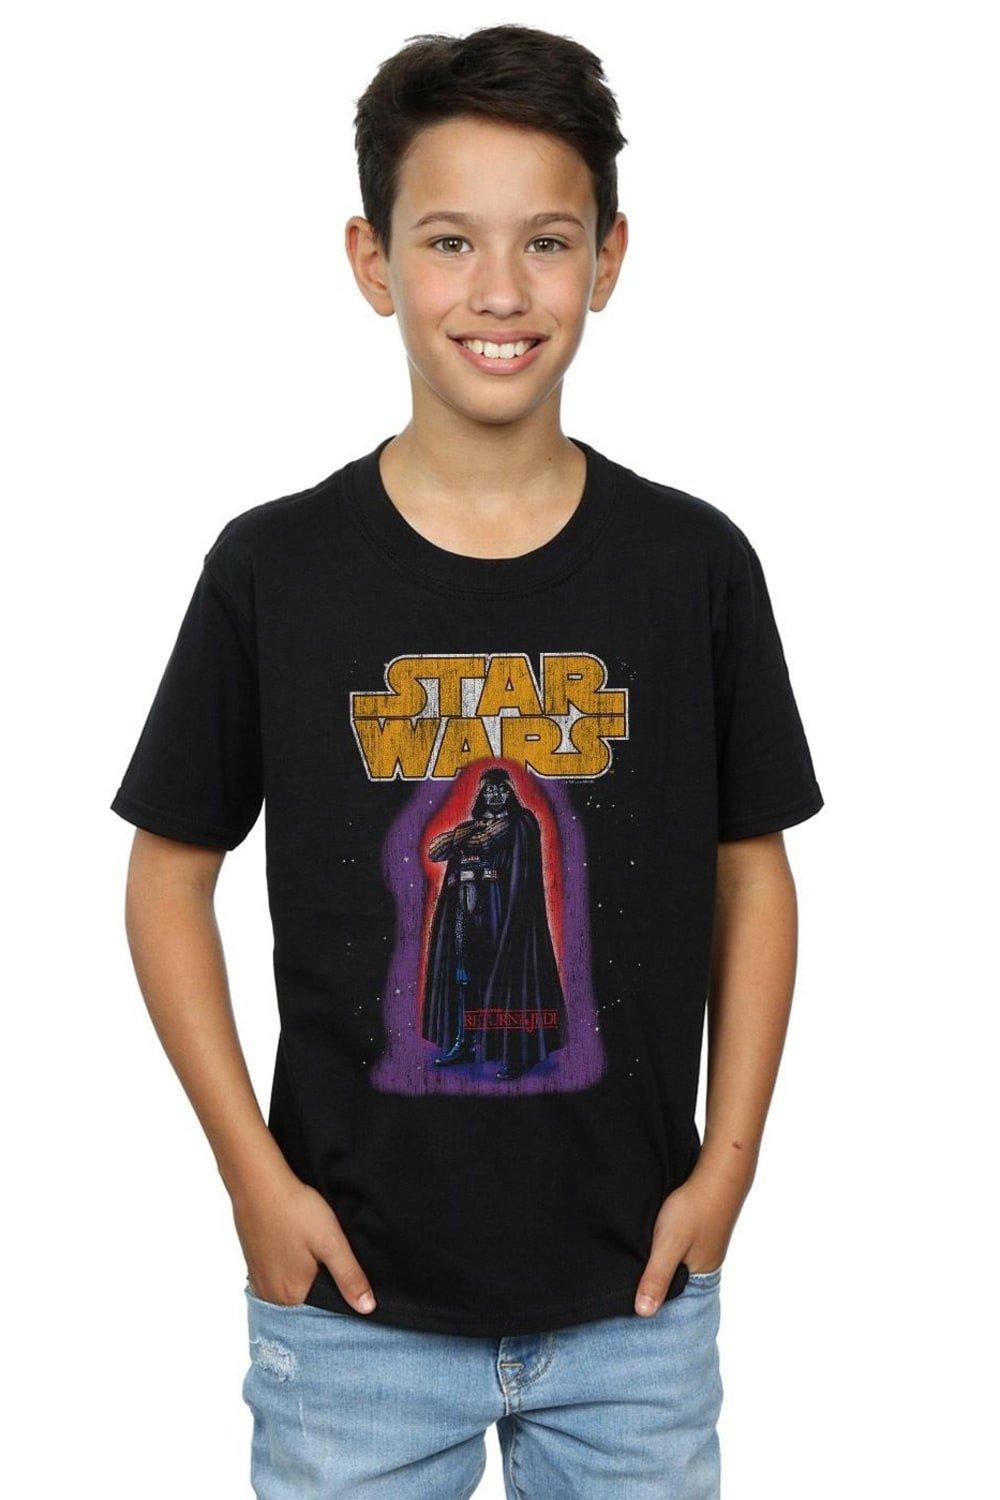 Darth Vader Vintage T-Shirt